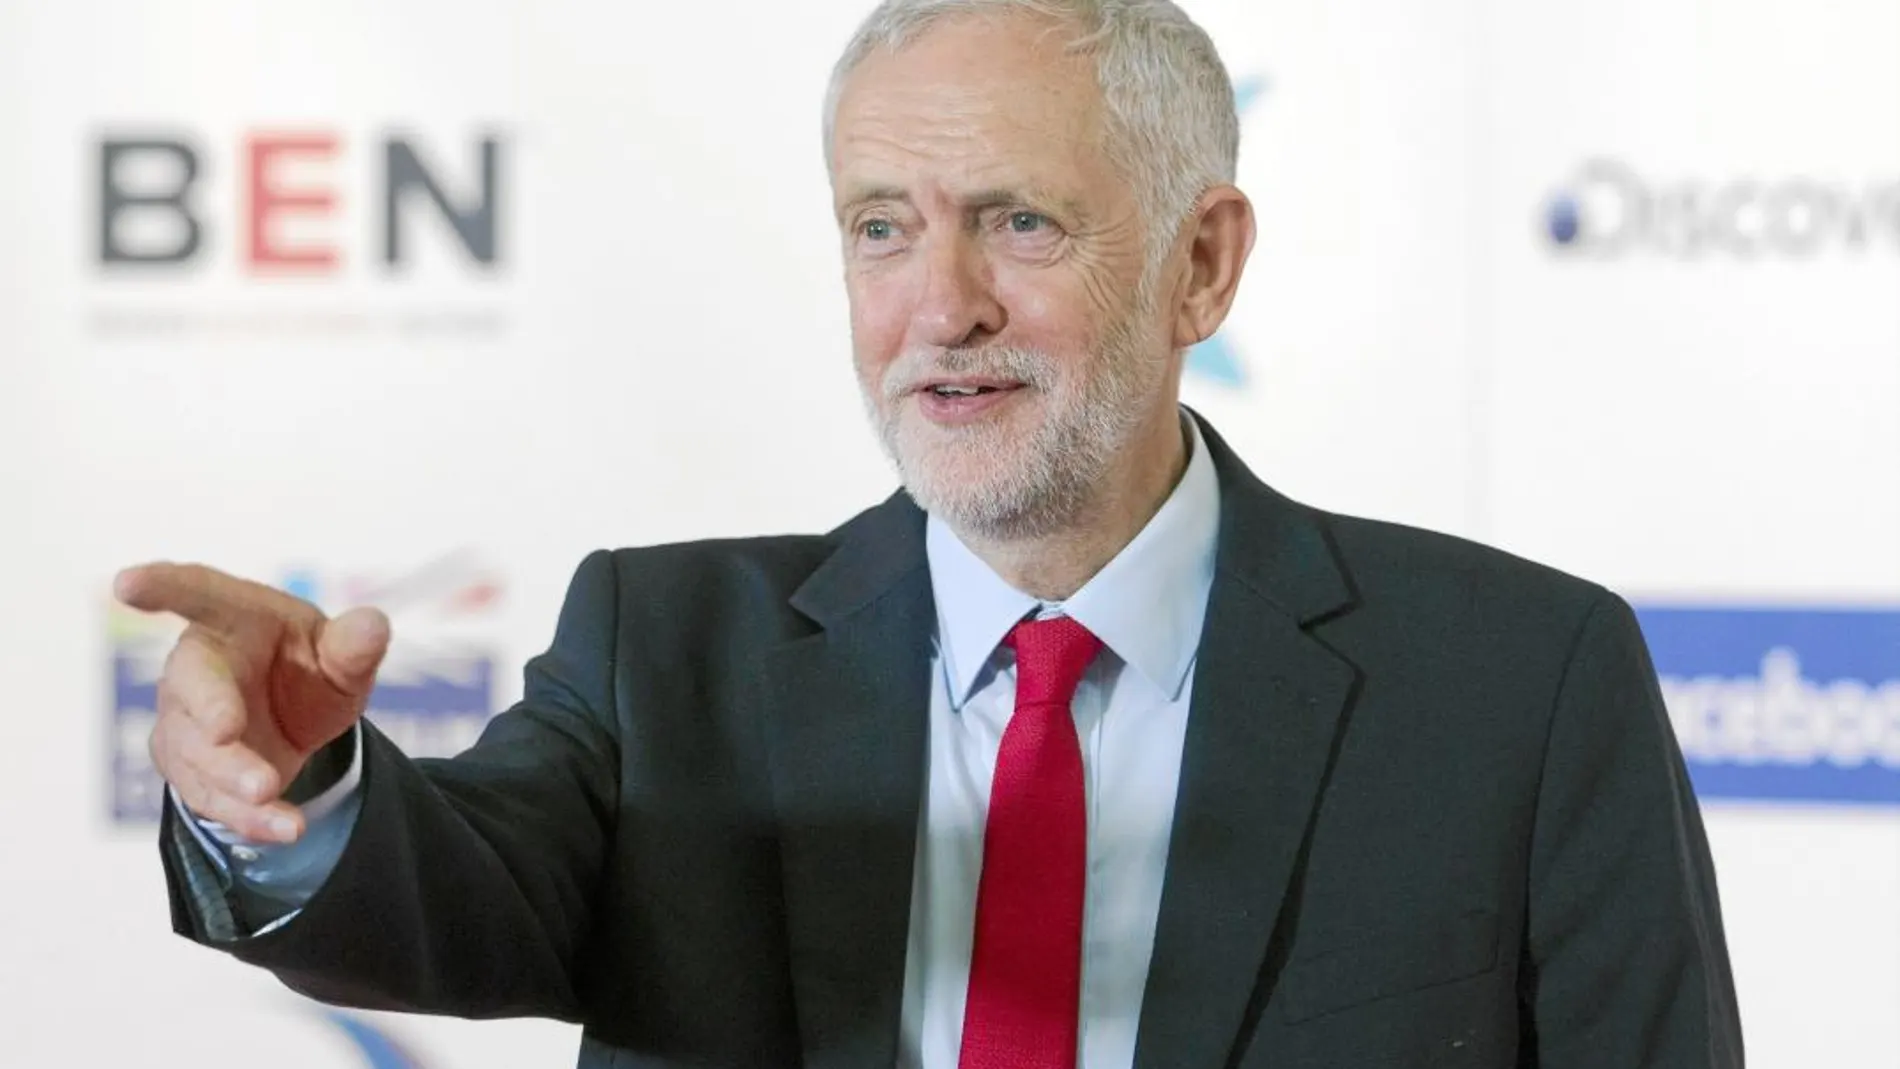 El Partido Laborista de Jeremy Corbyn discutirá la opción de otra consulta en su conferencia de septiembre